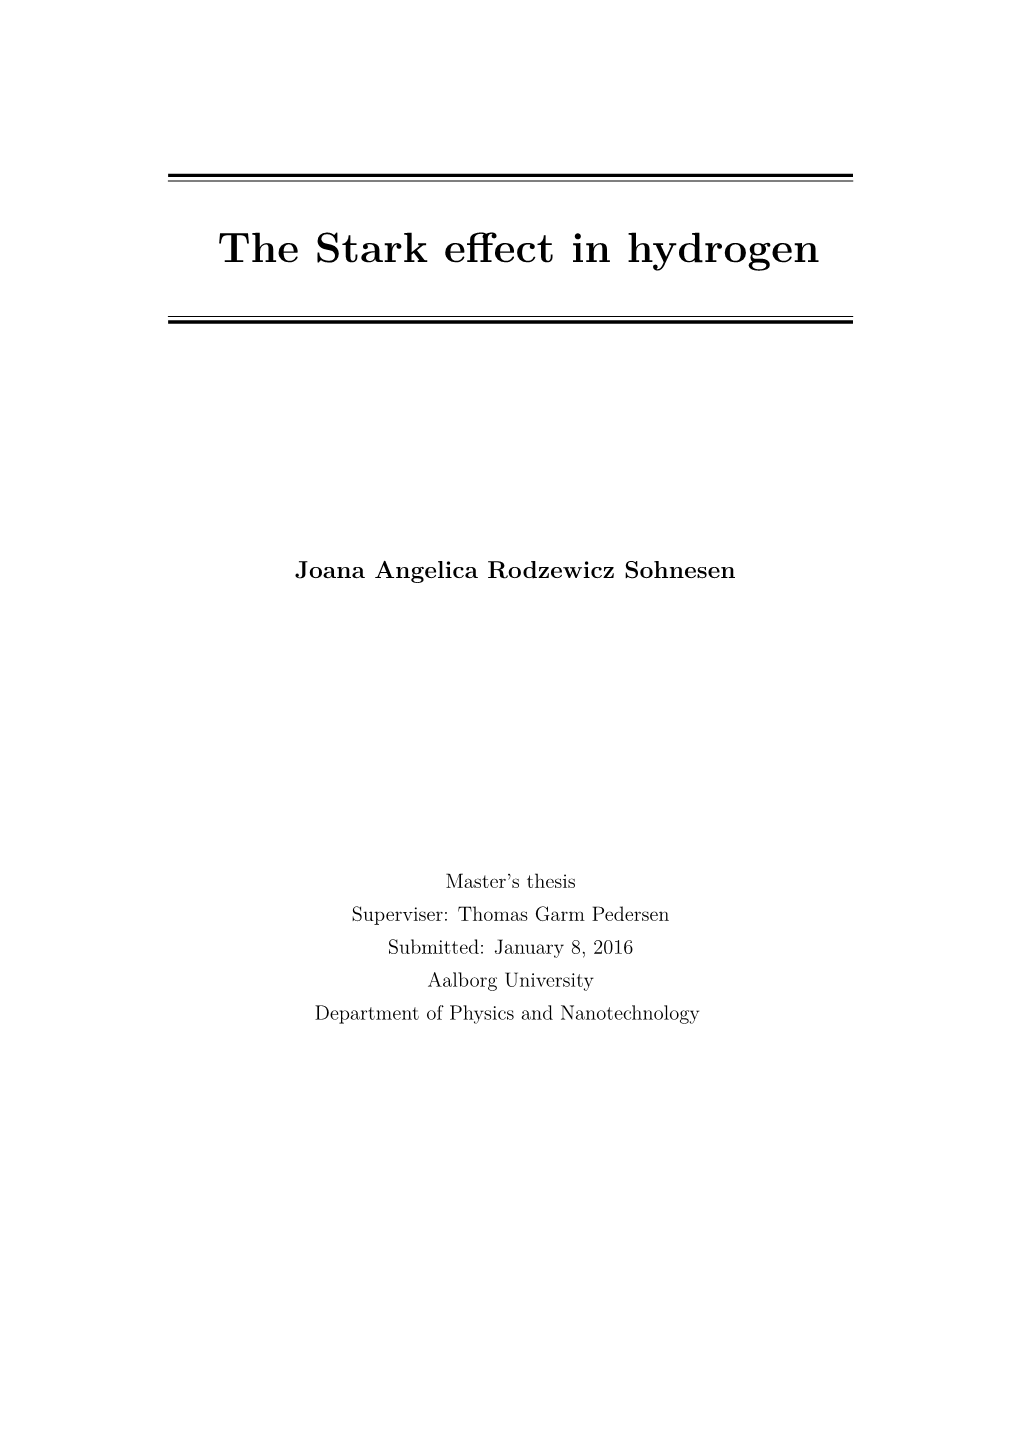 The Stark Effect in Hydrogen